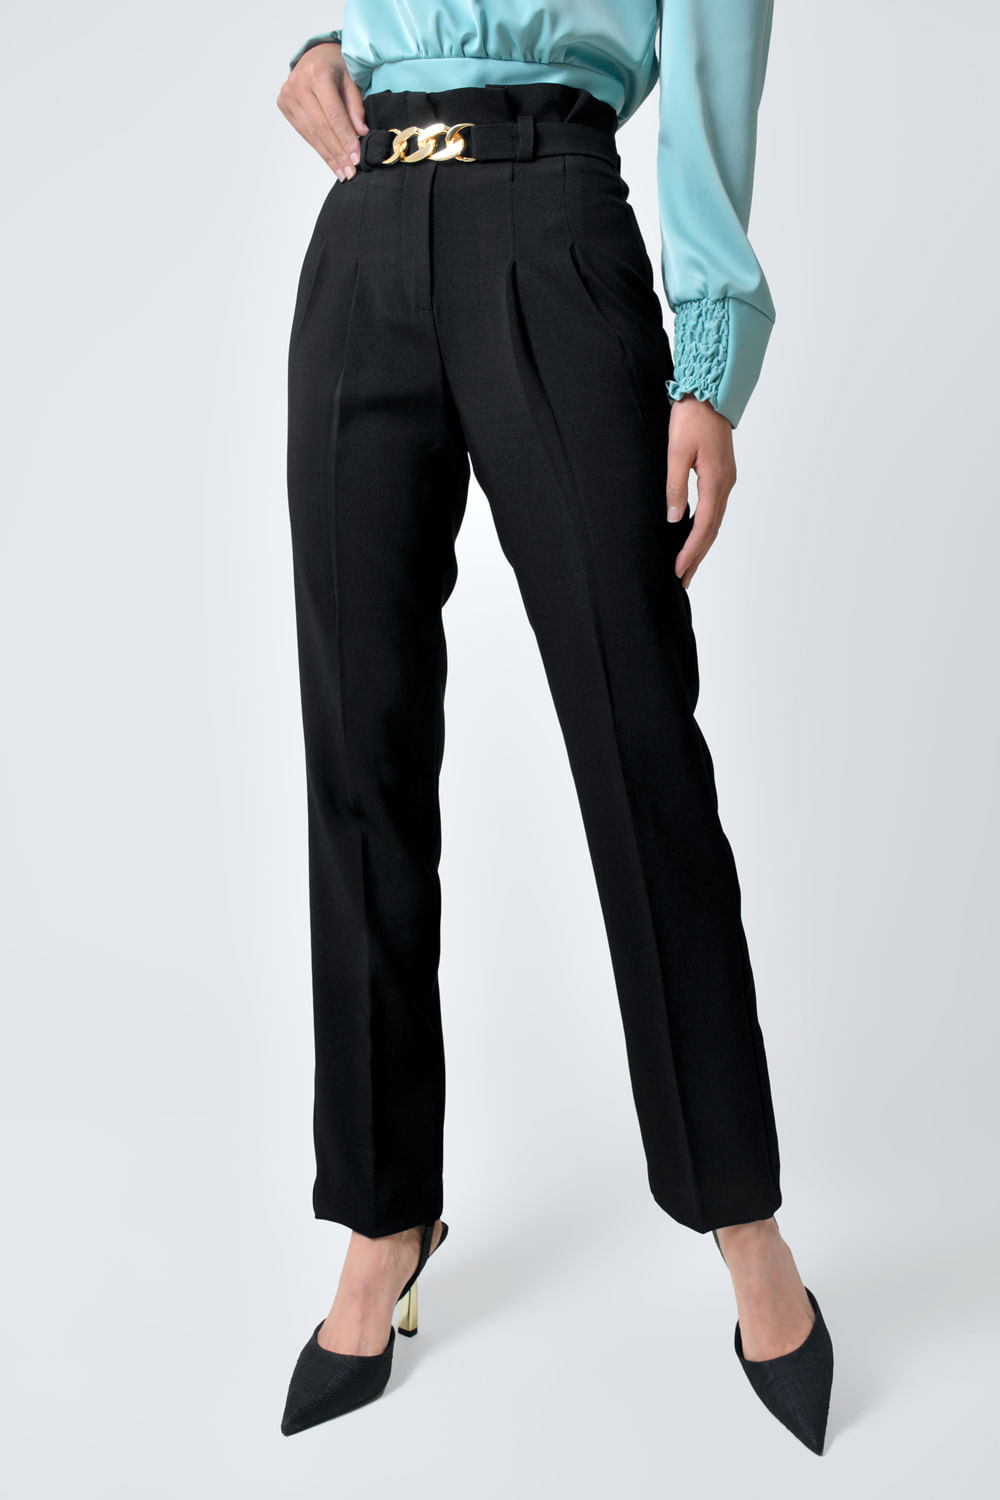 Pantalón Mujer Clásico Con Prense Y Cinturón - Xuss